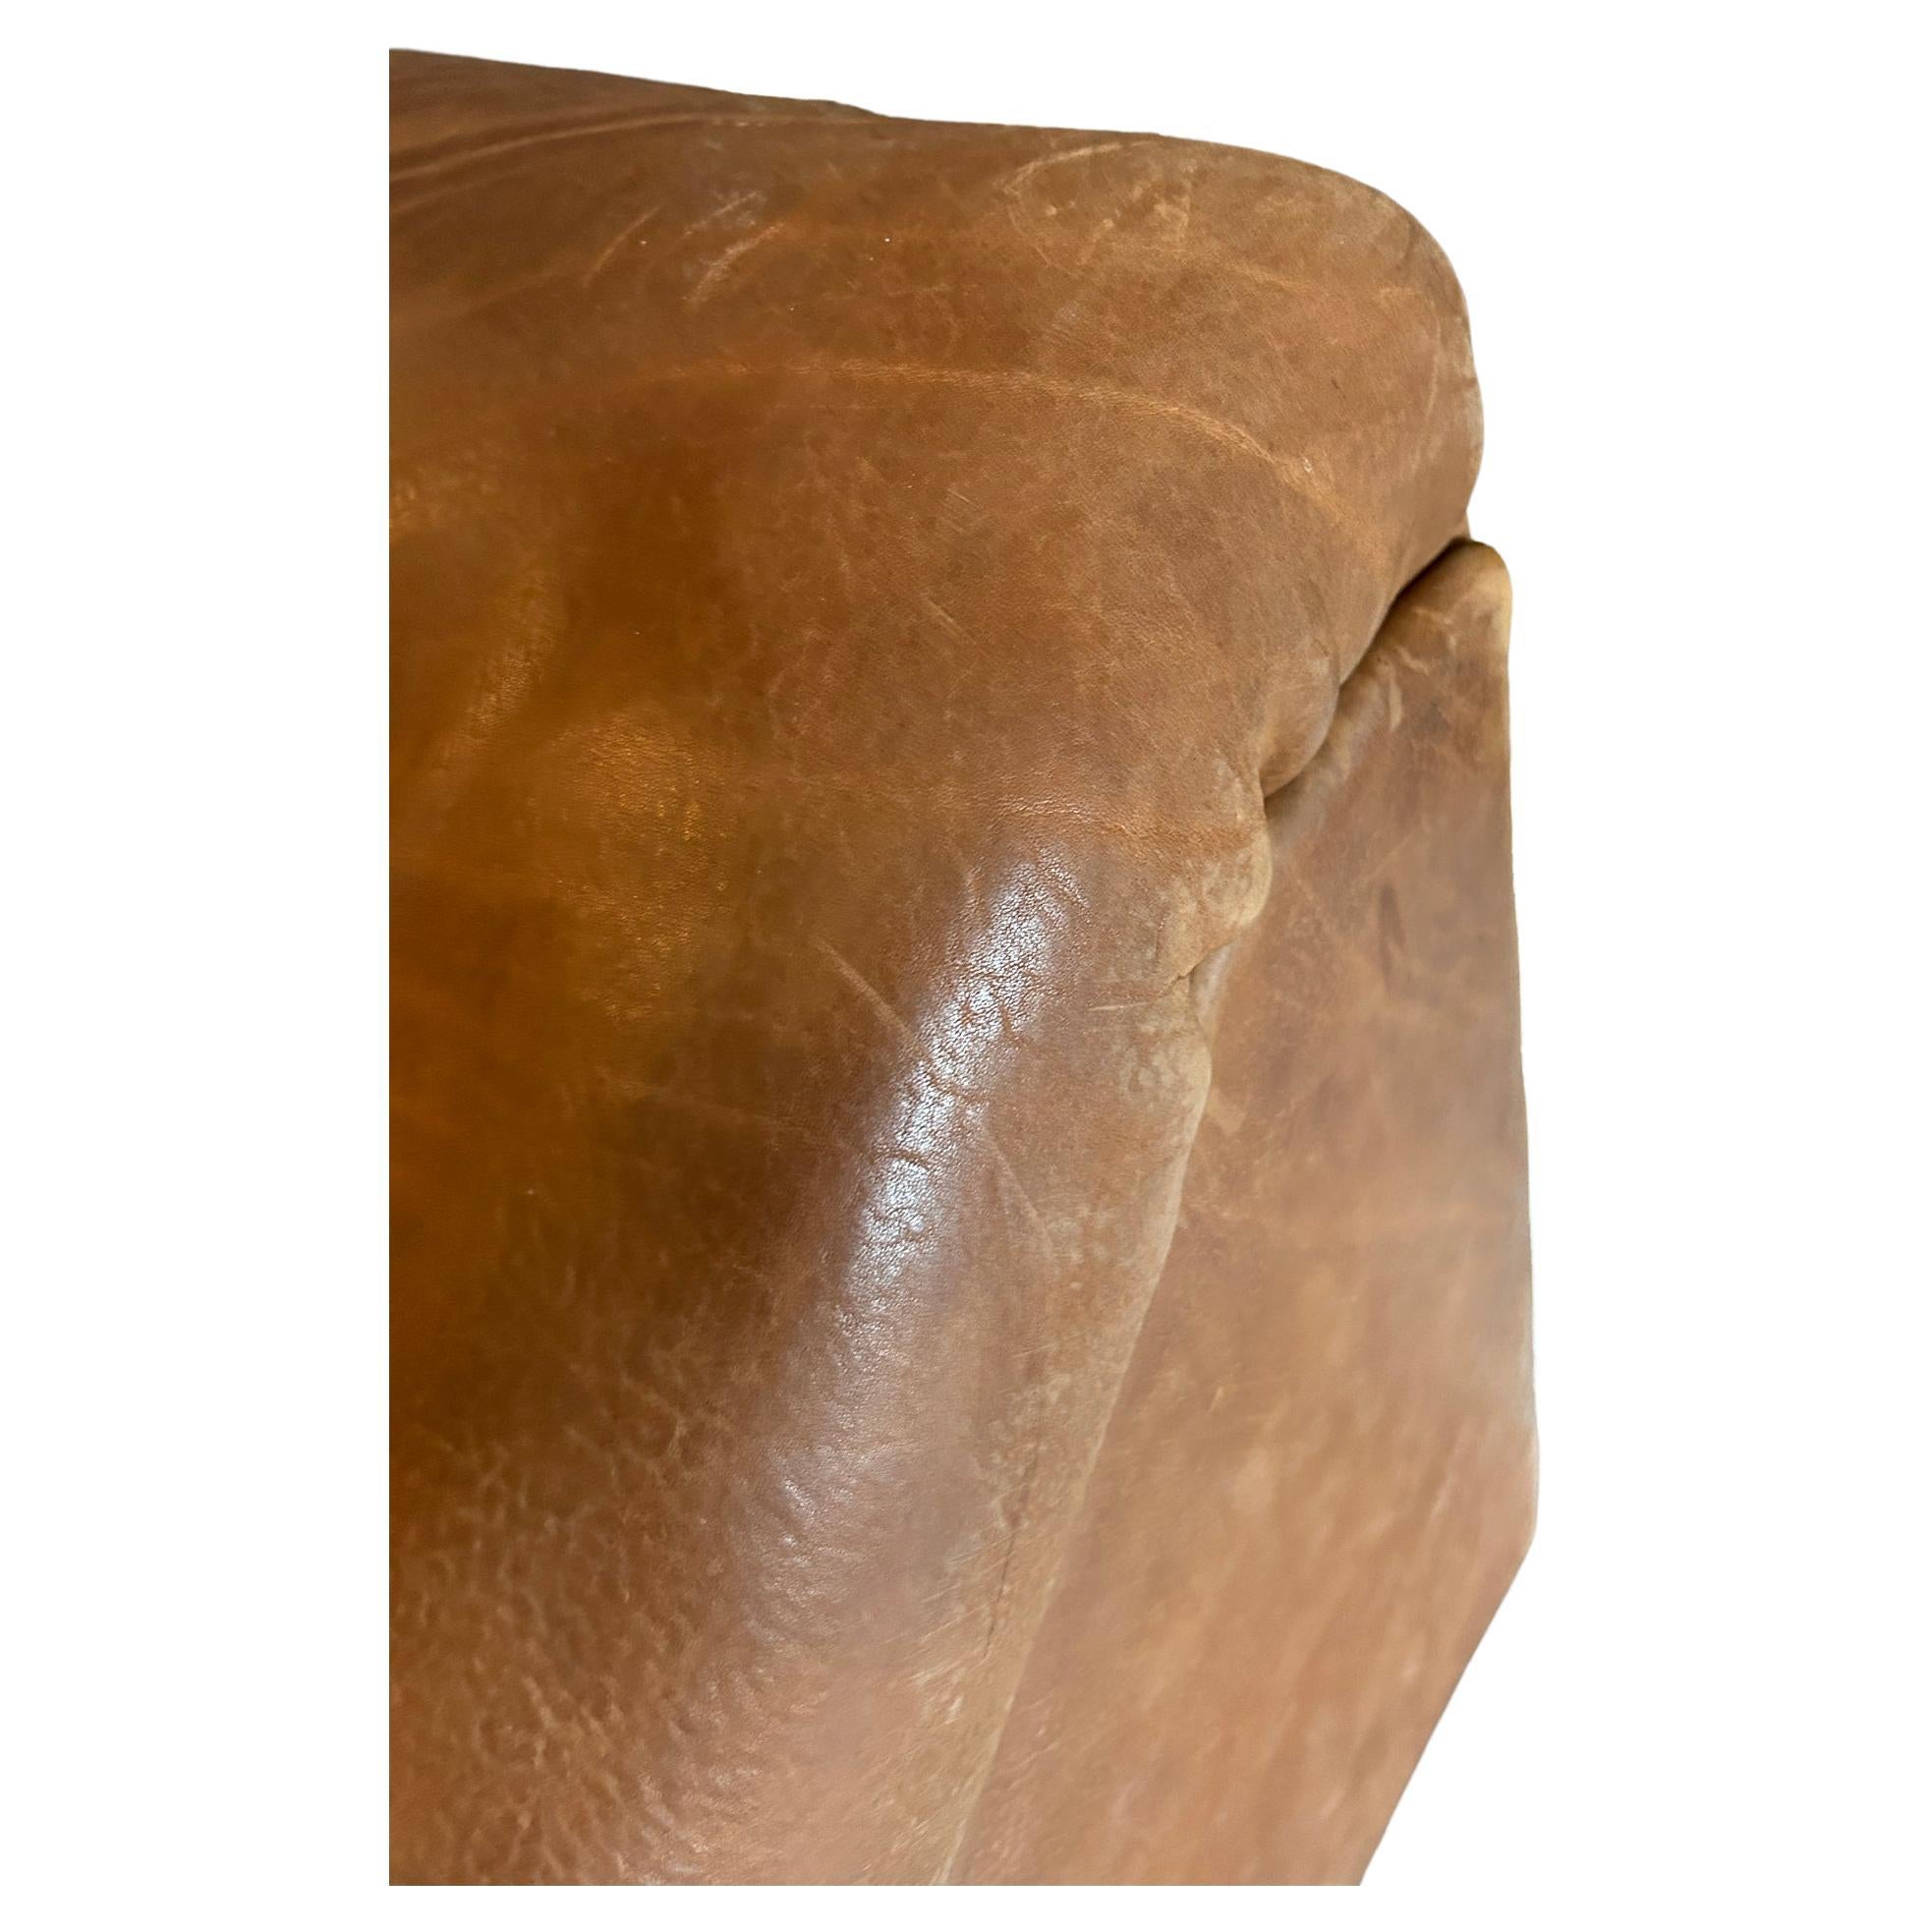 (2) Sections midcentury De Sede DS46 sofa loveseat Cognac buffalo leather Switzerland circa 1970. Cuir de buffle épais de très haute qualité. Très basse Causeuse lourde (2) section avec accoudoirs à gauche et à droite. Une forme sculpturale